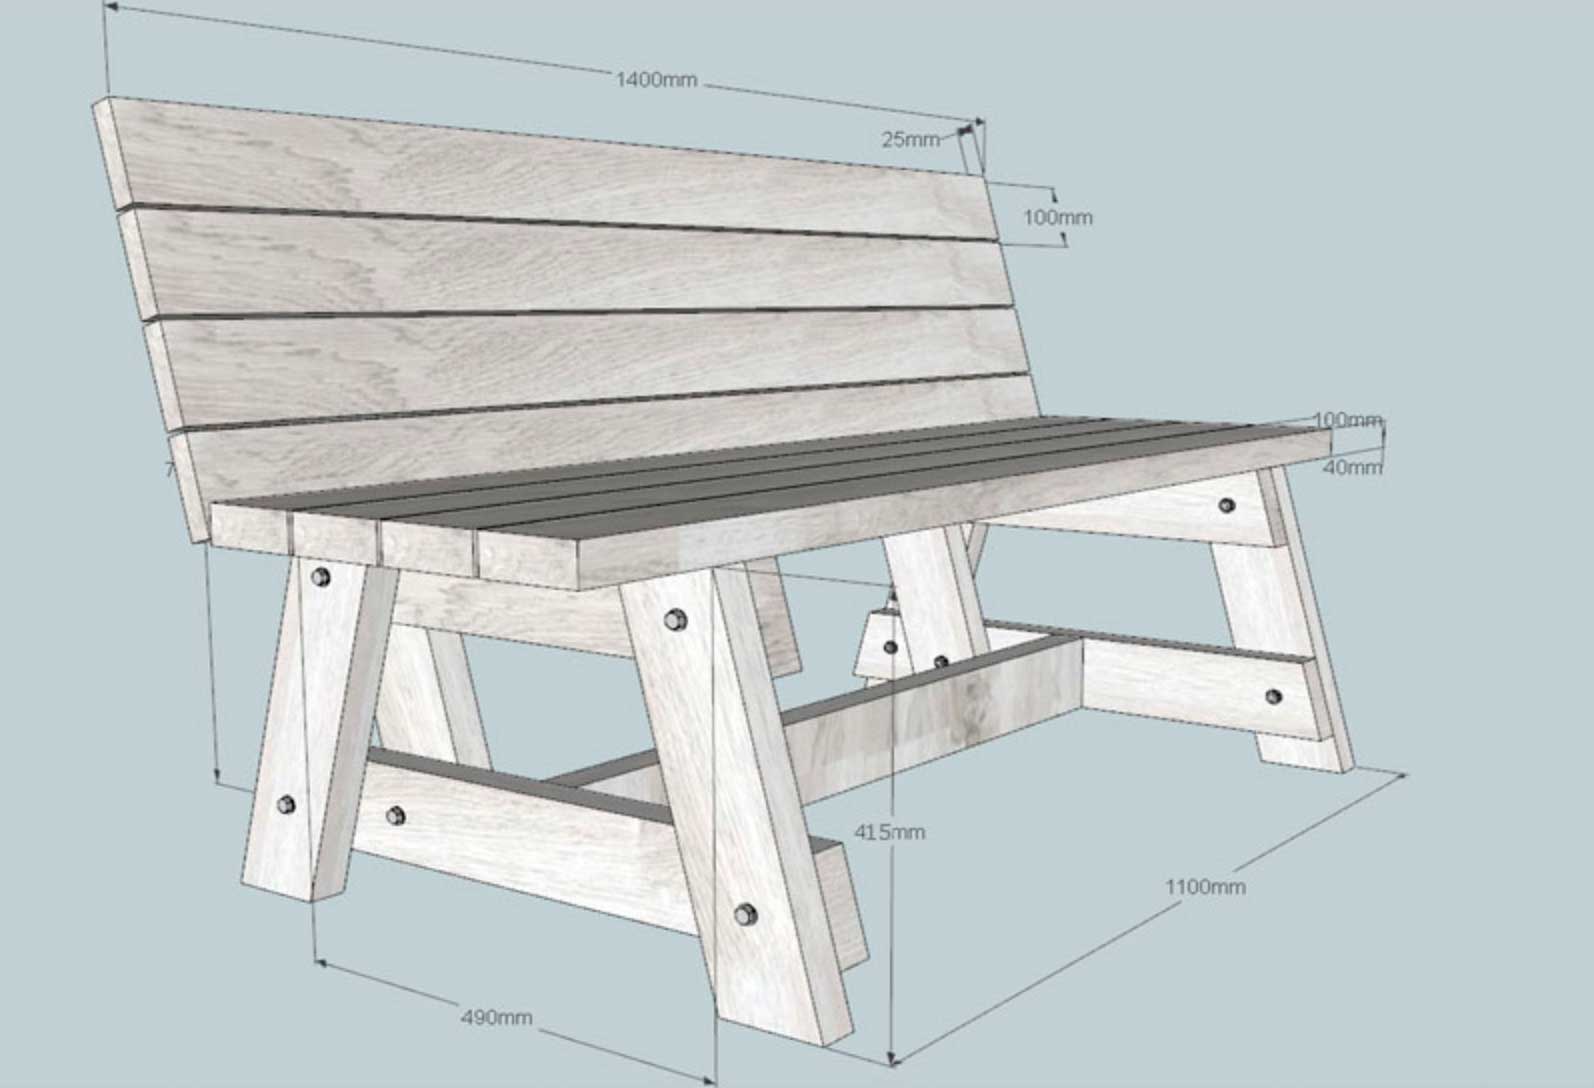 Как сделать деревянную лавочку или скамейку своими силами?